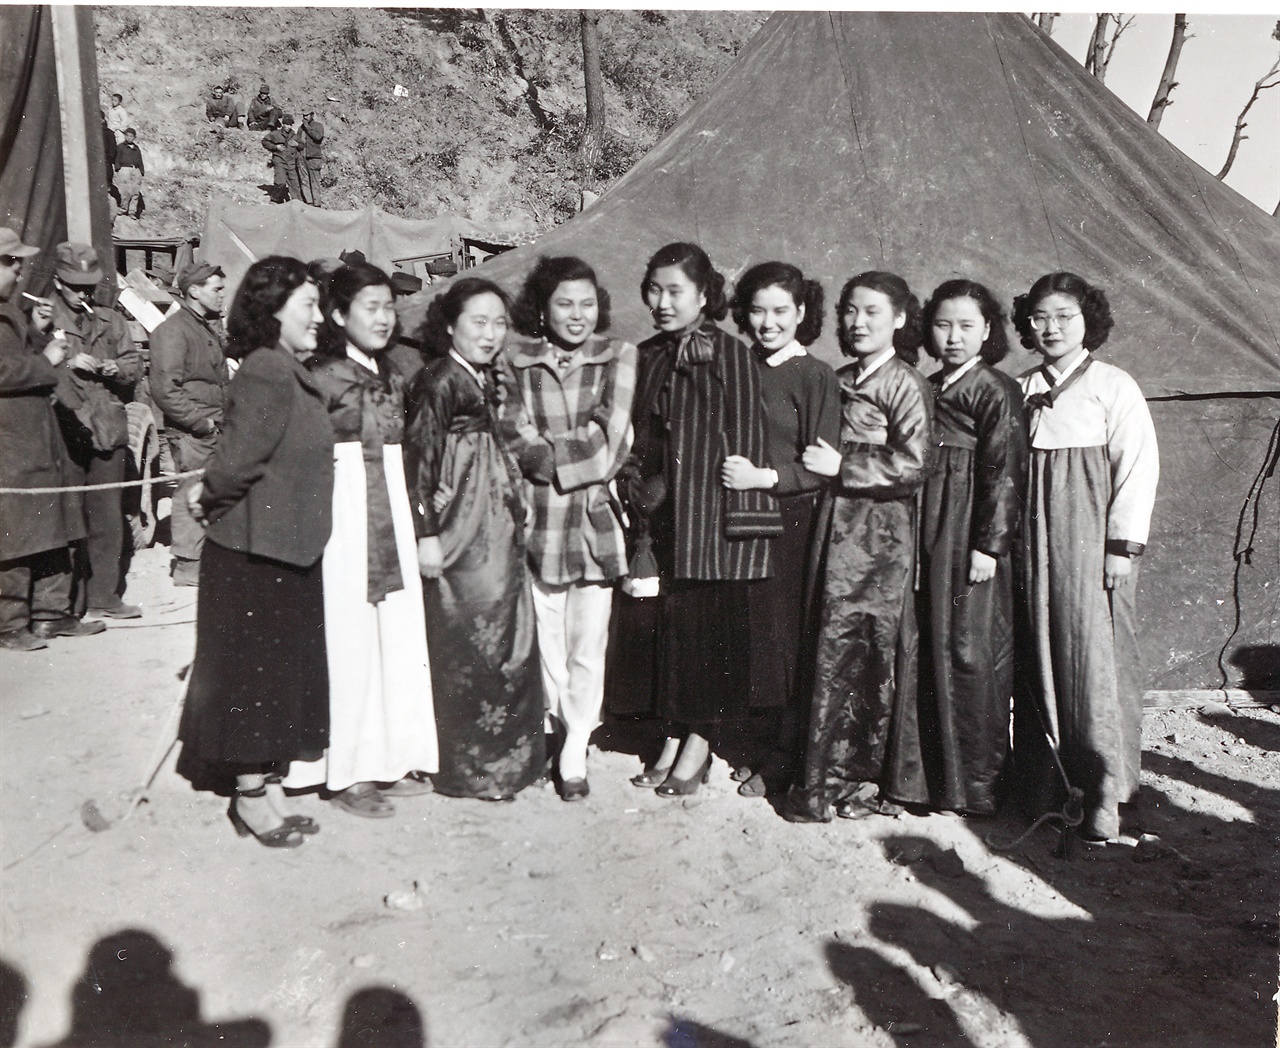  1950. 11. 27. 마산. 한국 여성 연예인들이 미 해병부대에서 위문공연을 하고 있다. 
(이 사진설명은 영어원문을 직역하였음을 밝힙니다.)